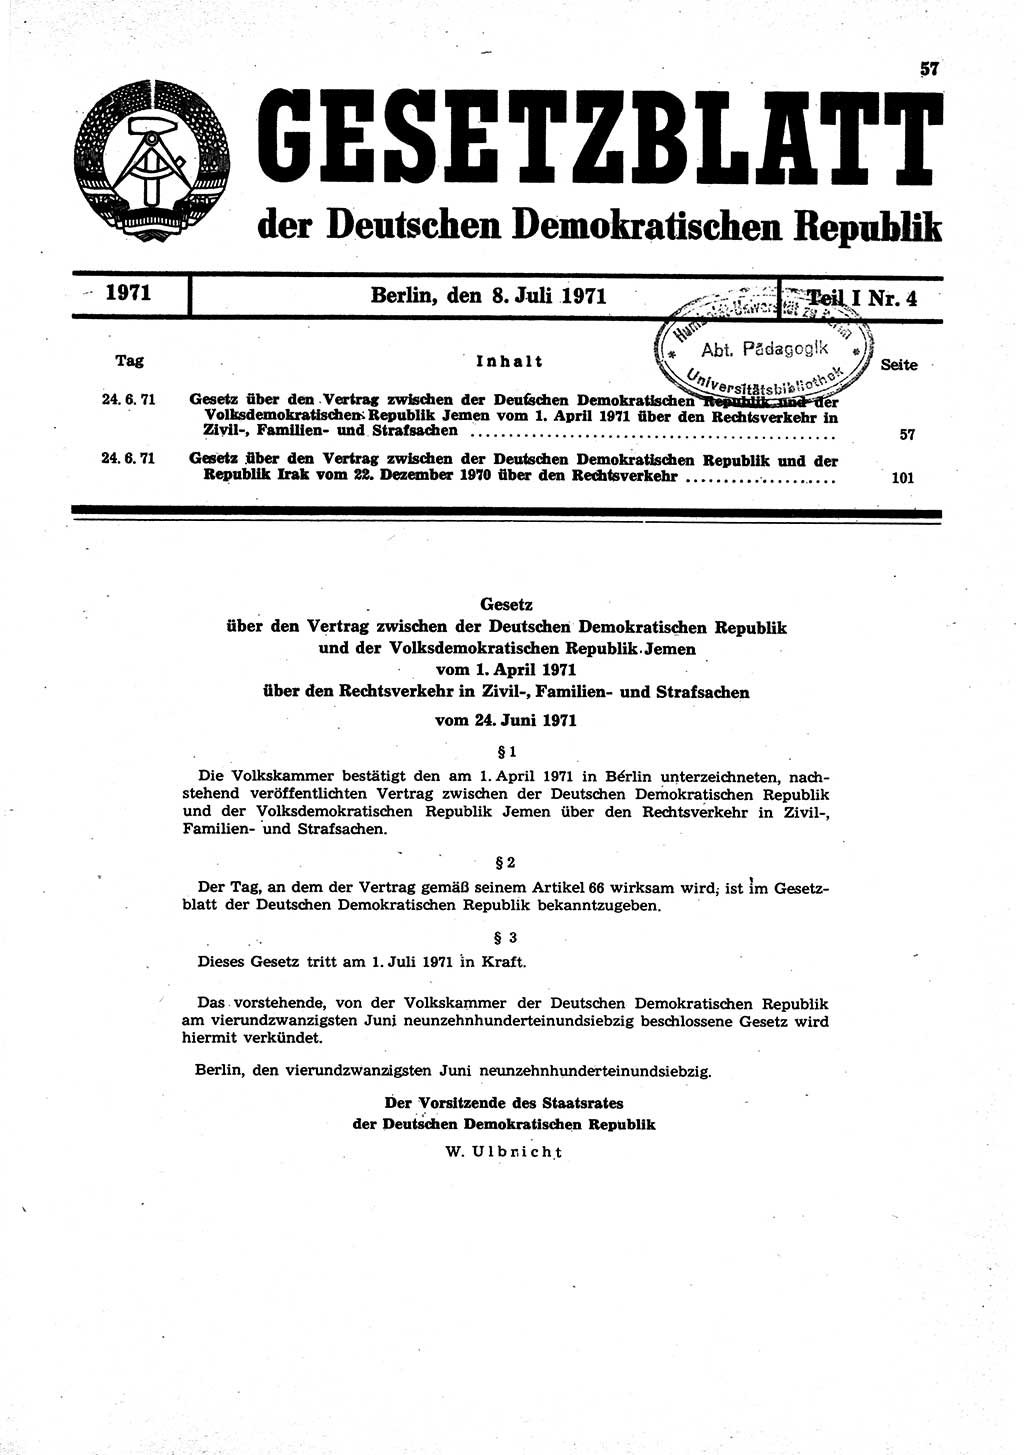 Gesetzblatt (GBl.) der Deutschen Demokratischen Republik (DDR) Teil Ⅰ 1971, Seite 57 (GBl. DDR Ⅰ 1971, S. 57)